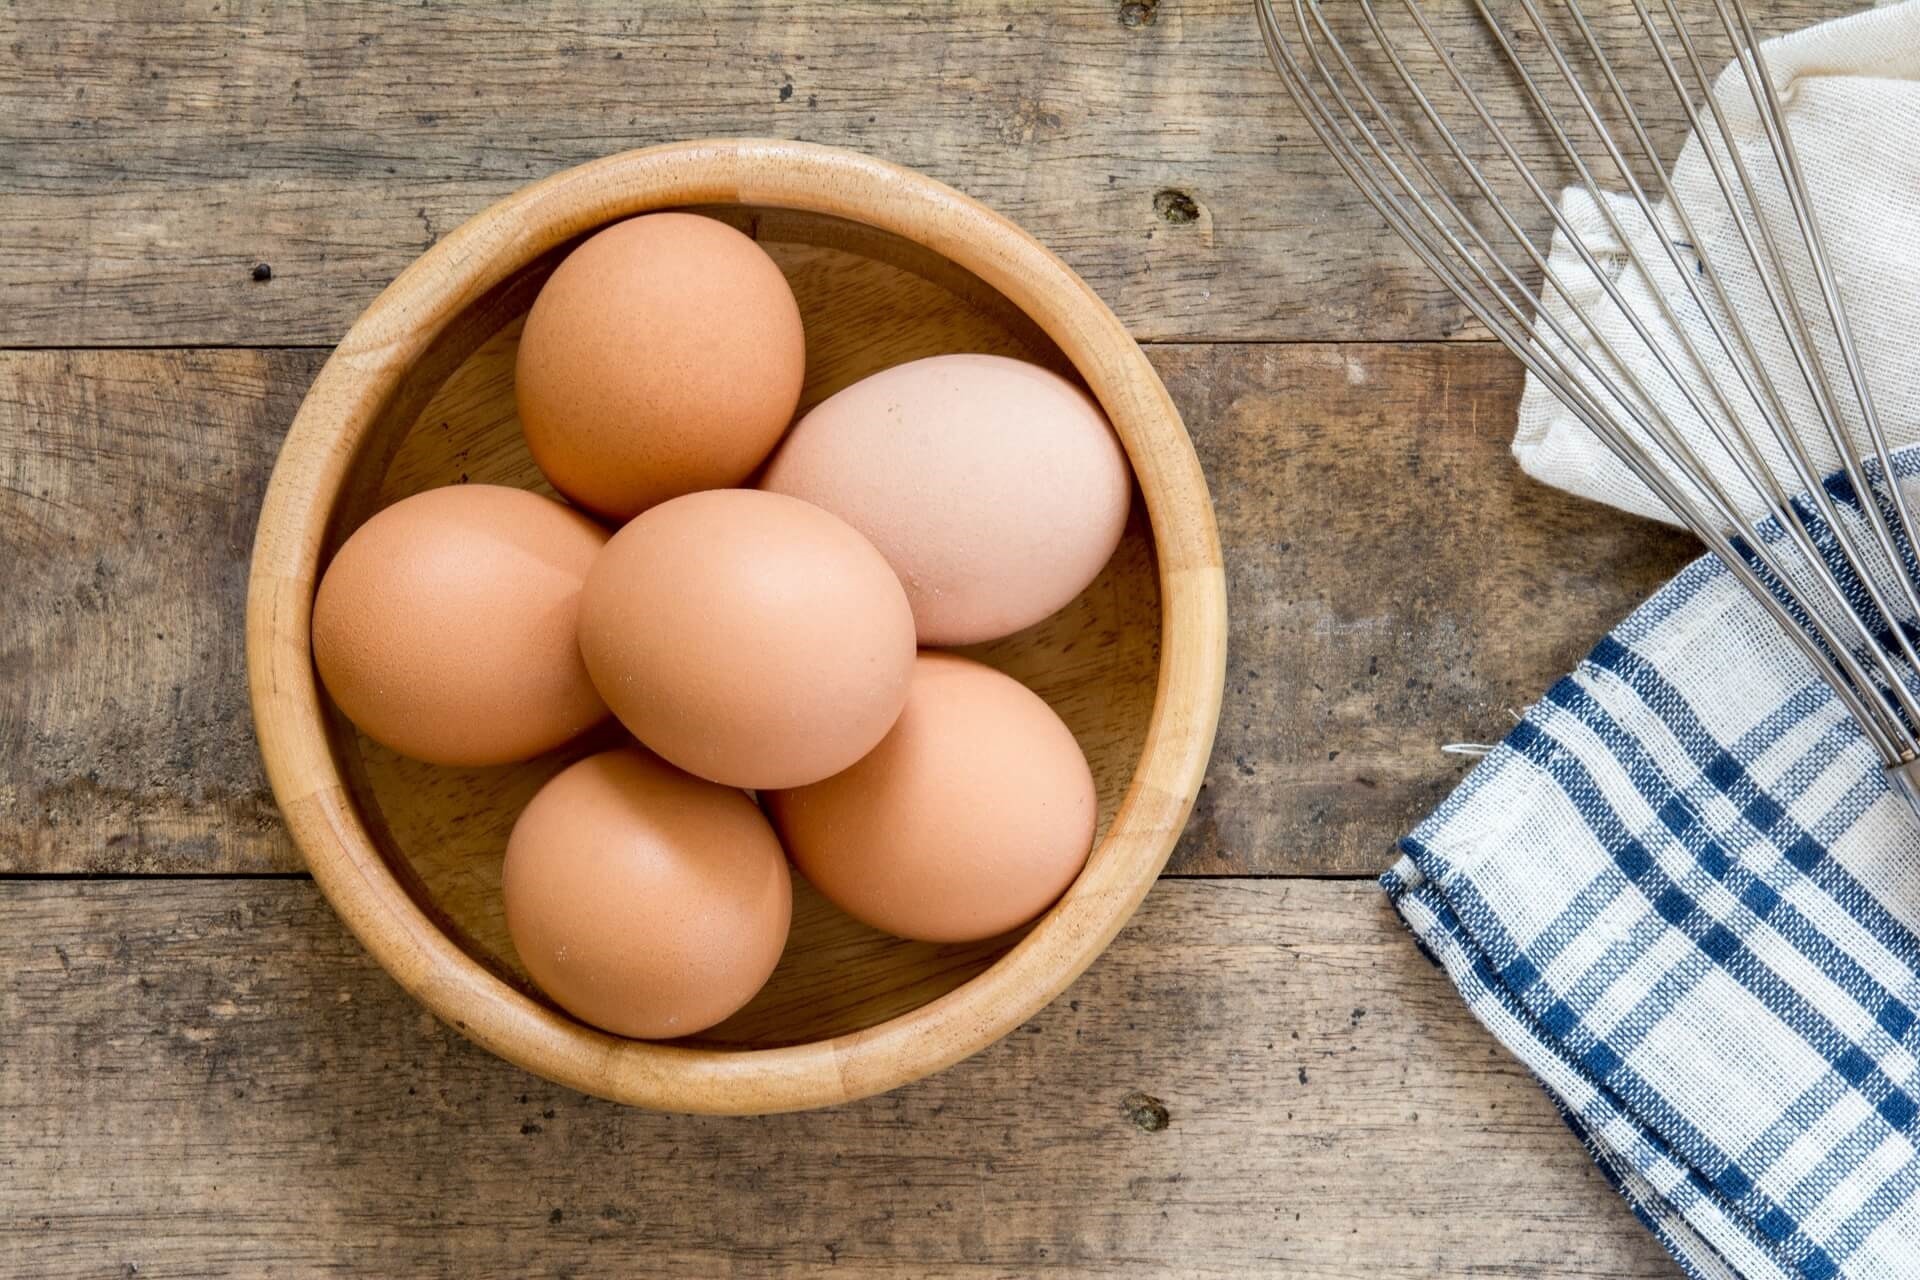 jaja-koliko su jaja zdrava-stručni saveti-dr gifing-dr. gifing-jela sa jajima-sirova jaja-klub zdravih navika-iceberg salat centar-kajgana-jaje na oko-kuvano jaje-žumance-belance-zdravlje